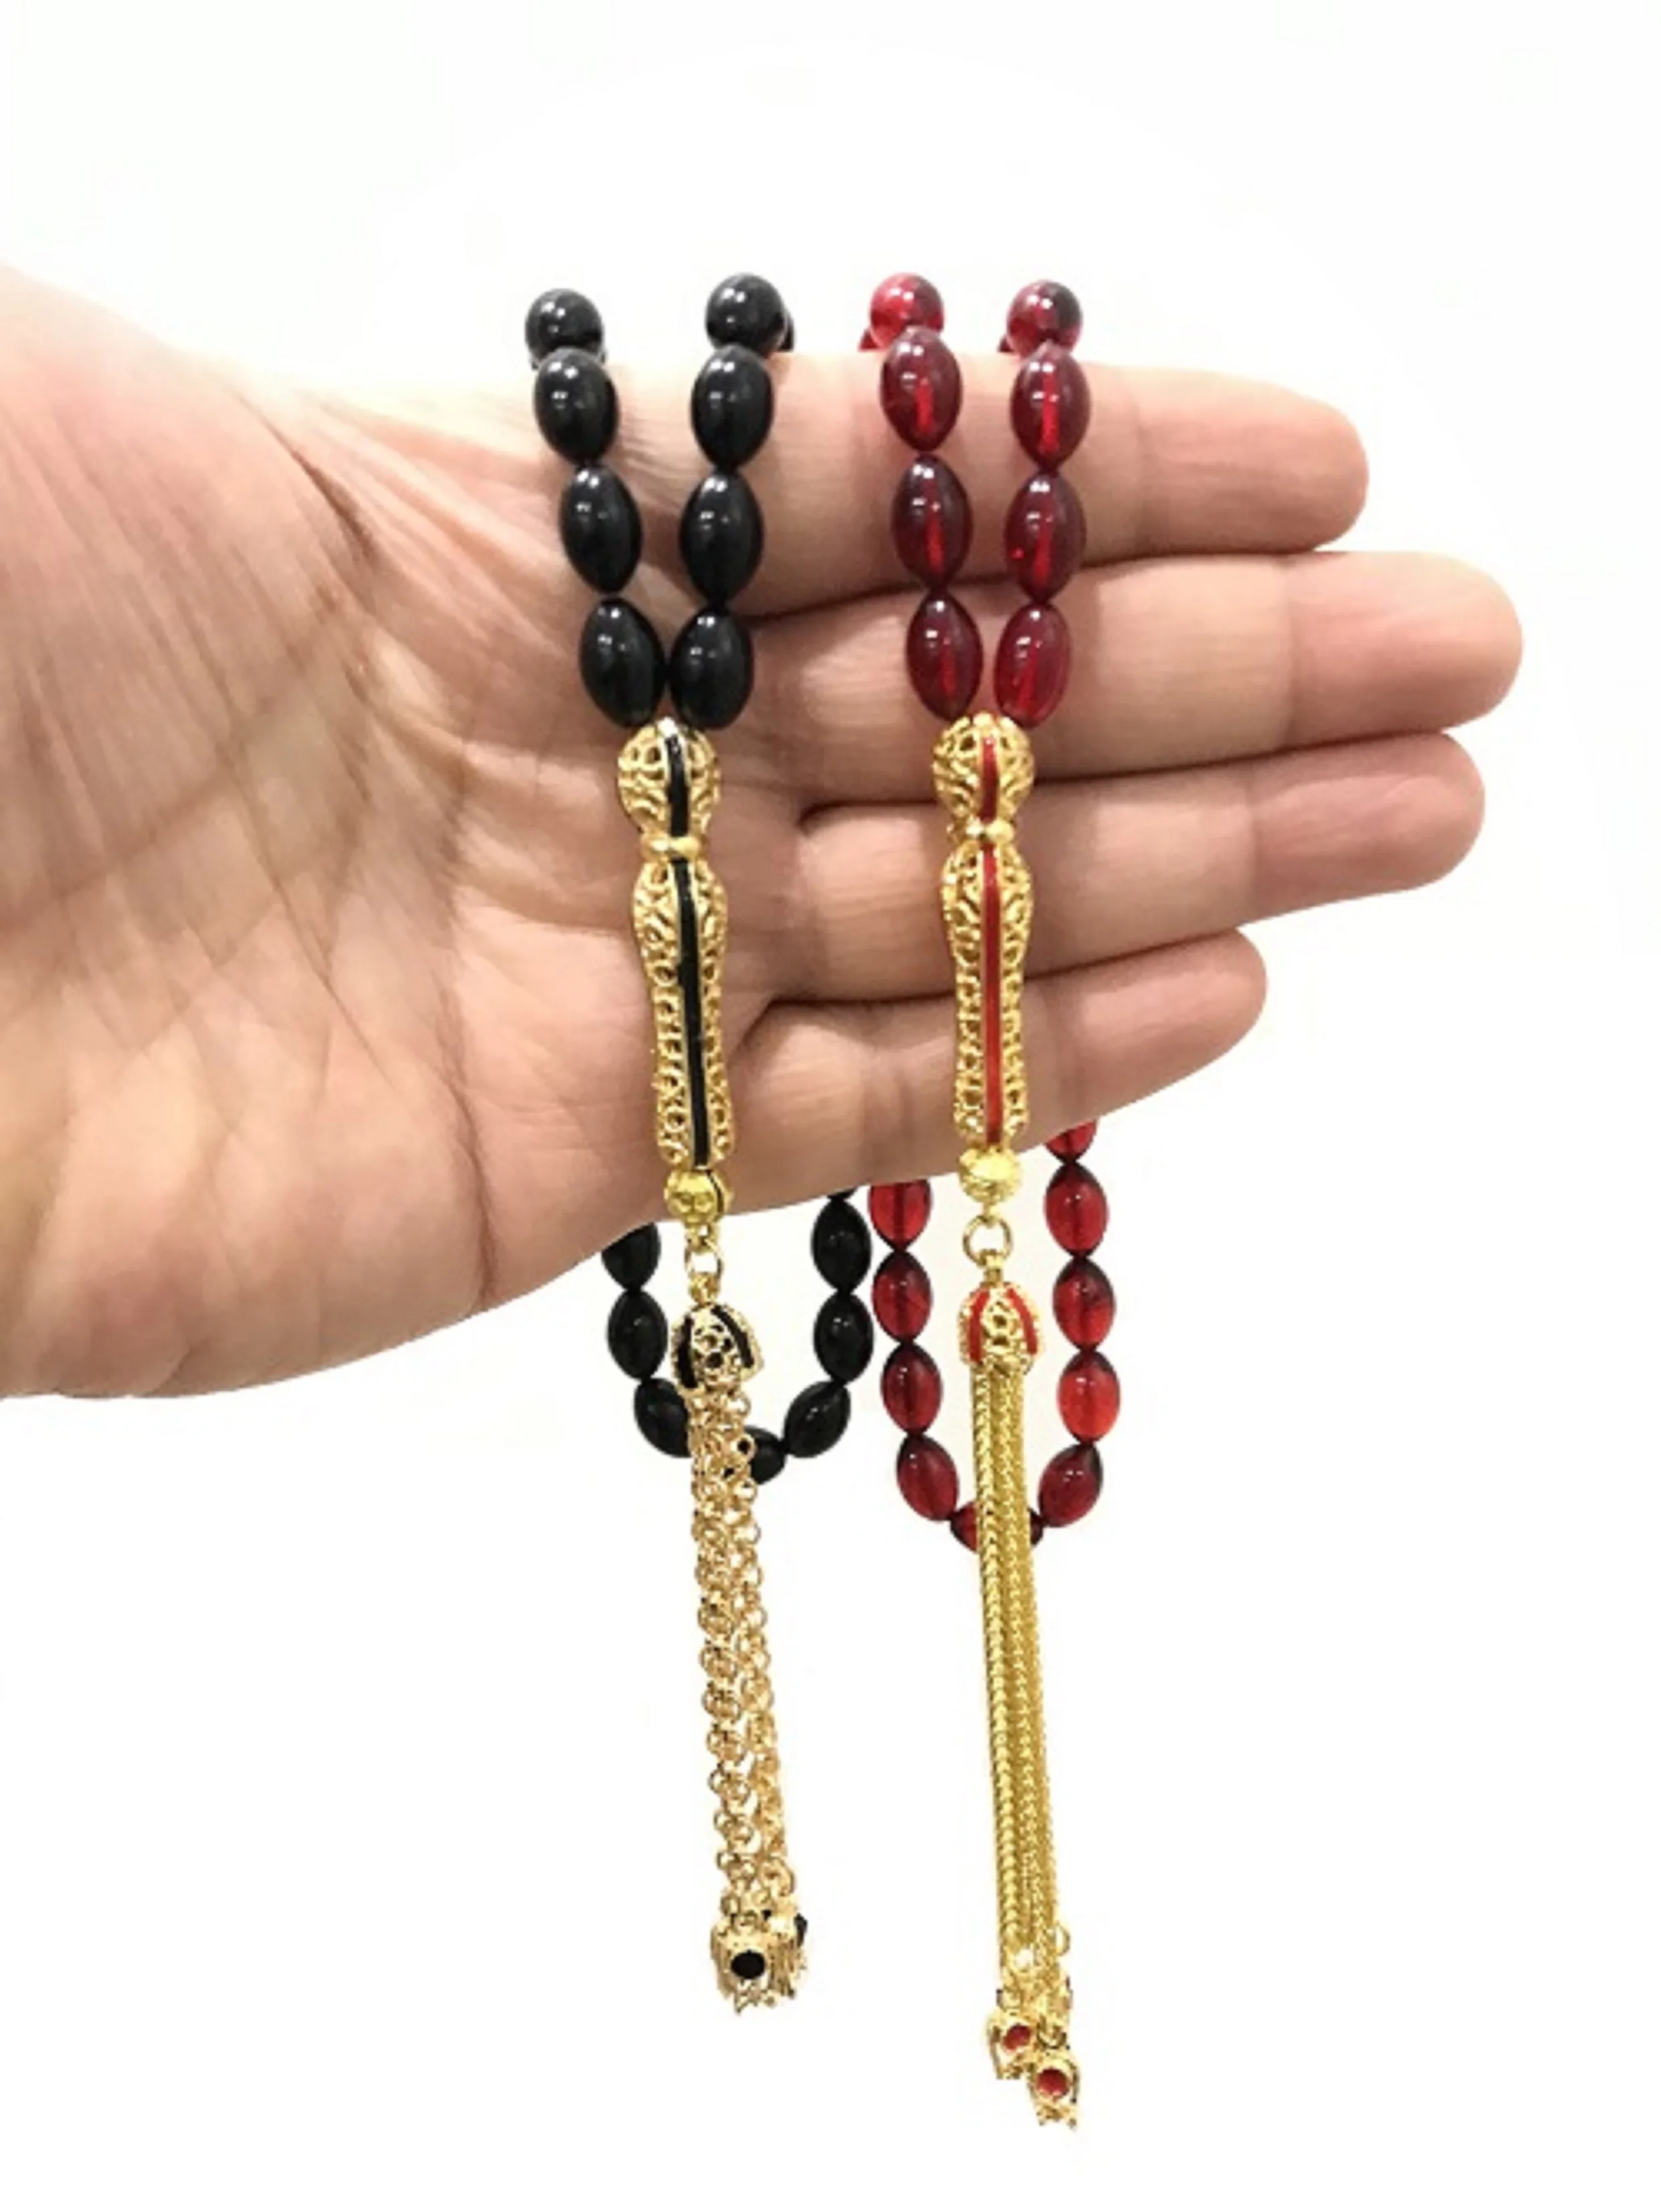 2022 2 Pcs Fire Amber Filigree Tasseled Tasbih Gift Jewelry Accessory Turkish Made Rosary Təsbeh Четки Chapelet 2 Kinds Fashion